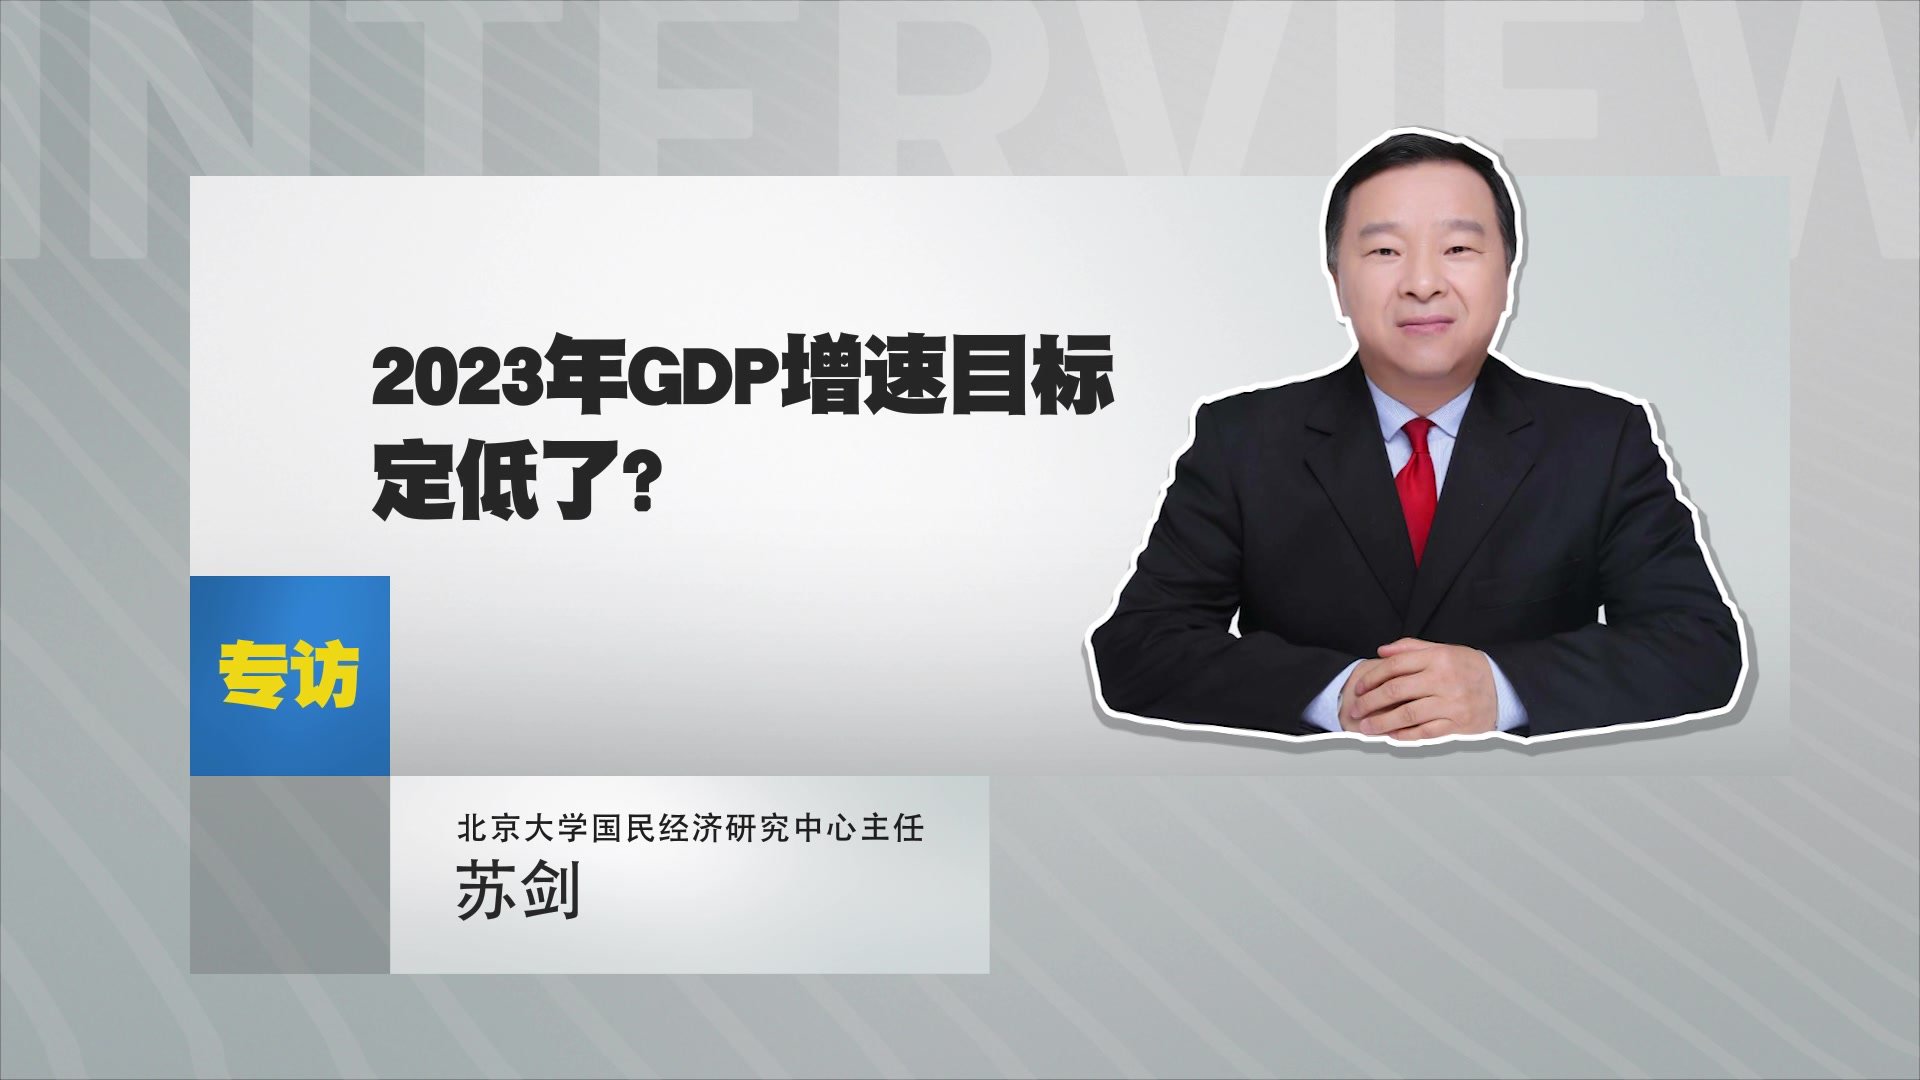 北京大学国民经济研究中心主任苏剑：2023年GDP增速目标定低了？